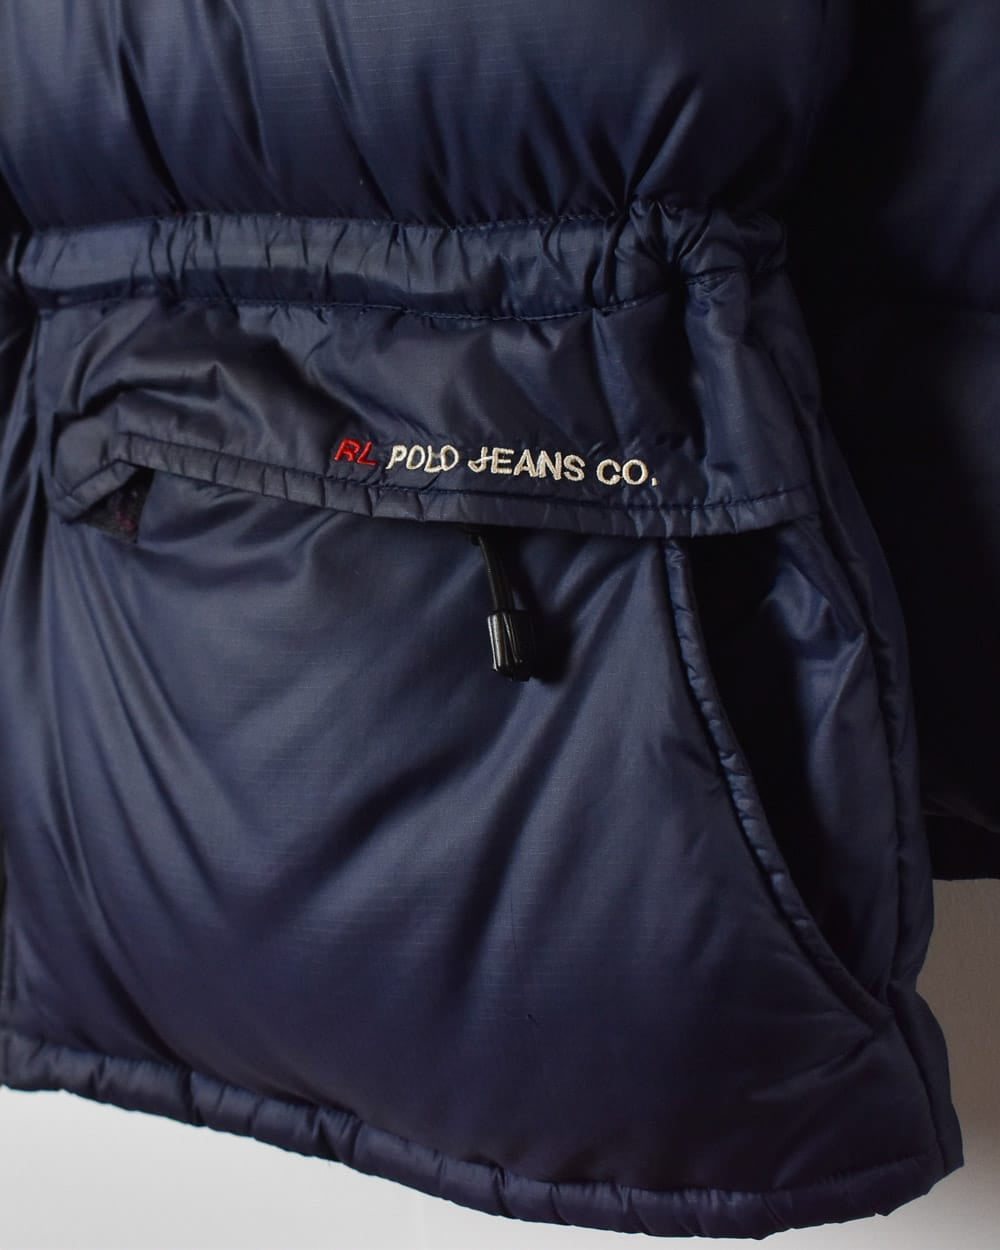 Navy Polo Jeans Co Ralph Lauren Puffer Jacket - Medium